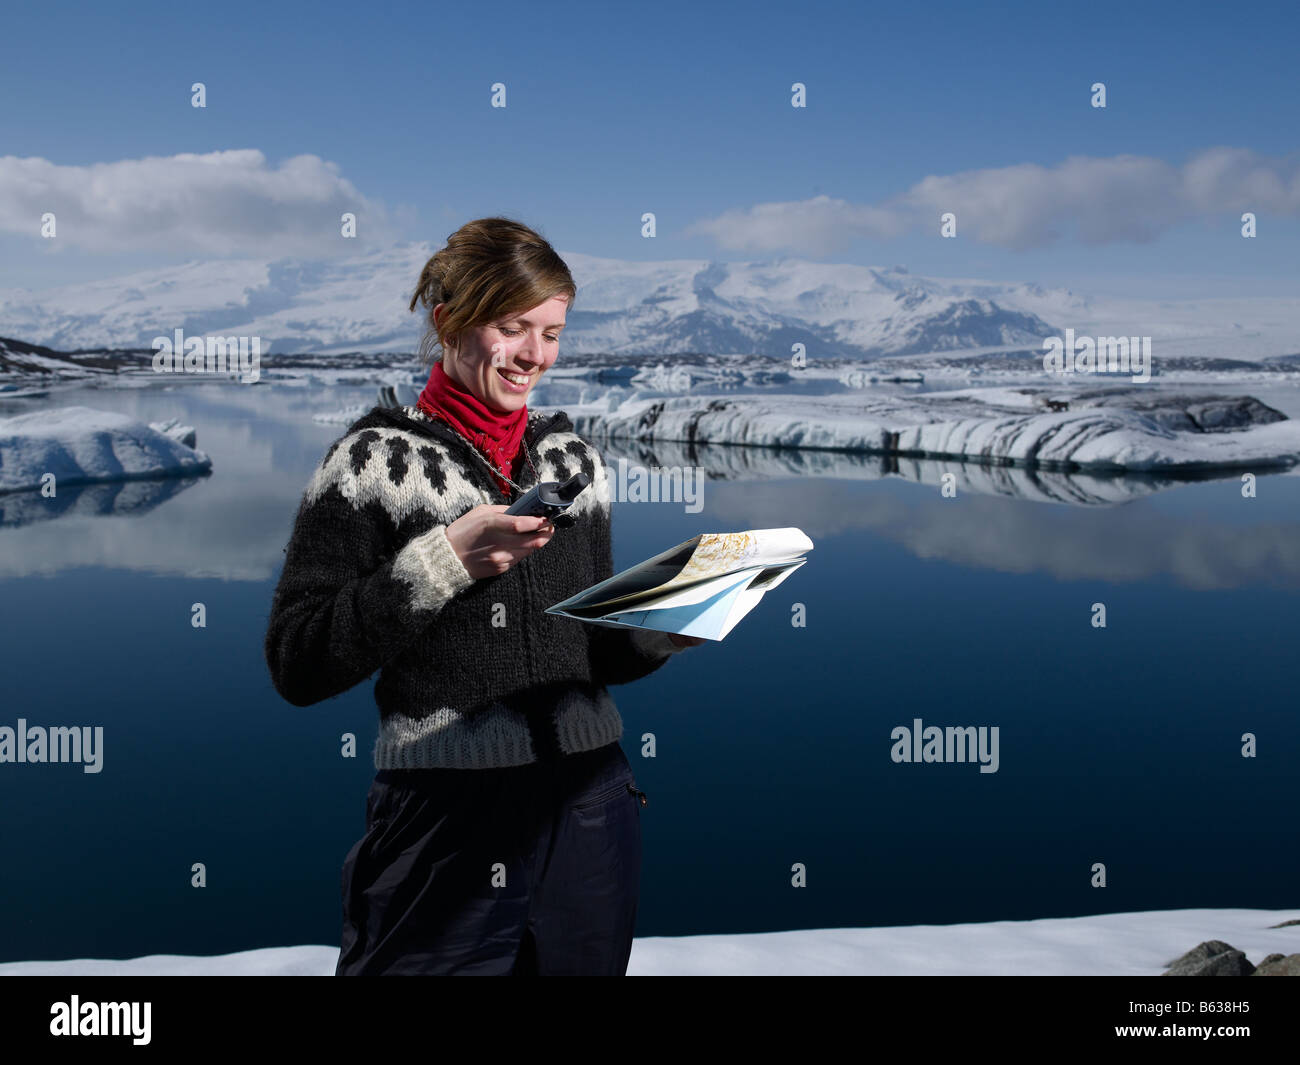 Fille islandaise avec carte à Jokulsarlon Glacial Lagoon, glacier Breidamerkurjokull, l'Est de l'Islande Banque D'Images